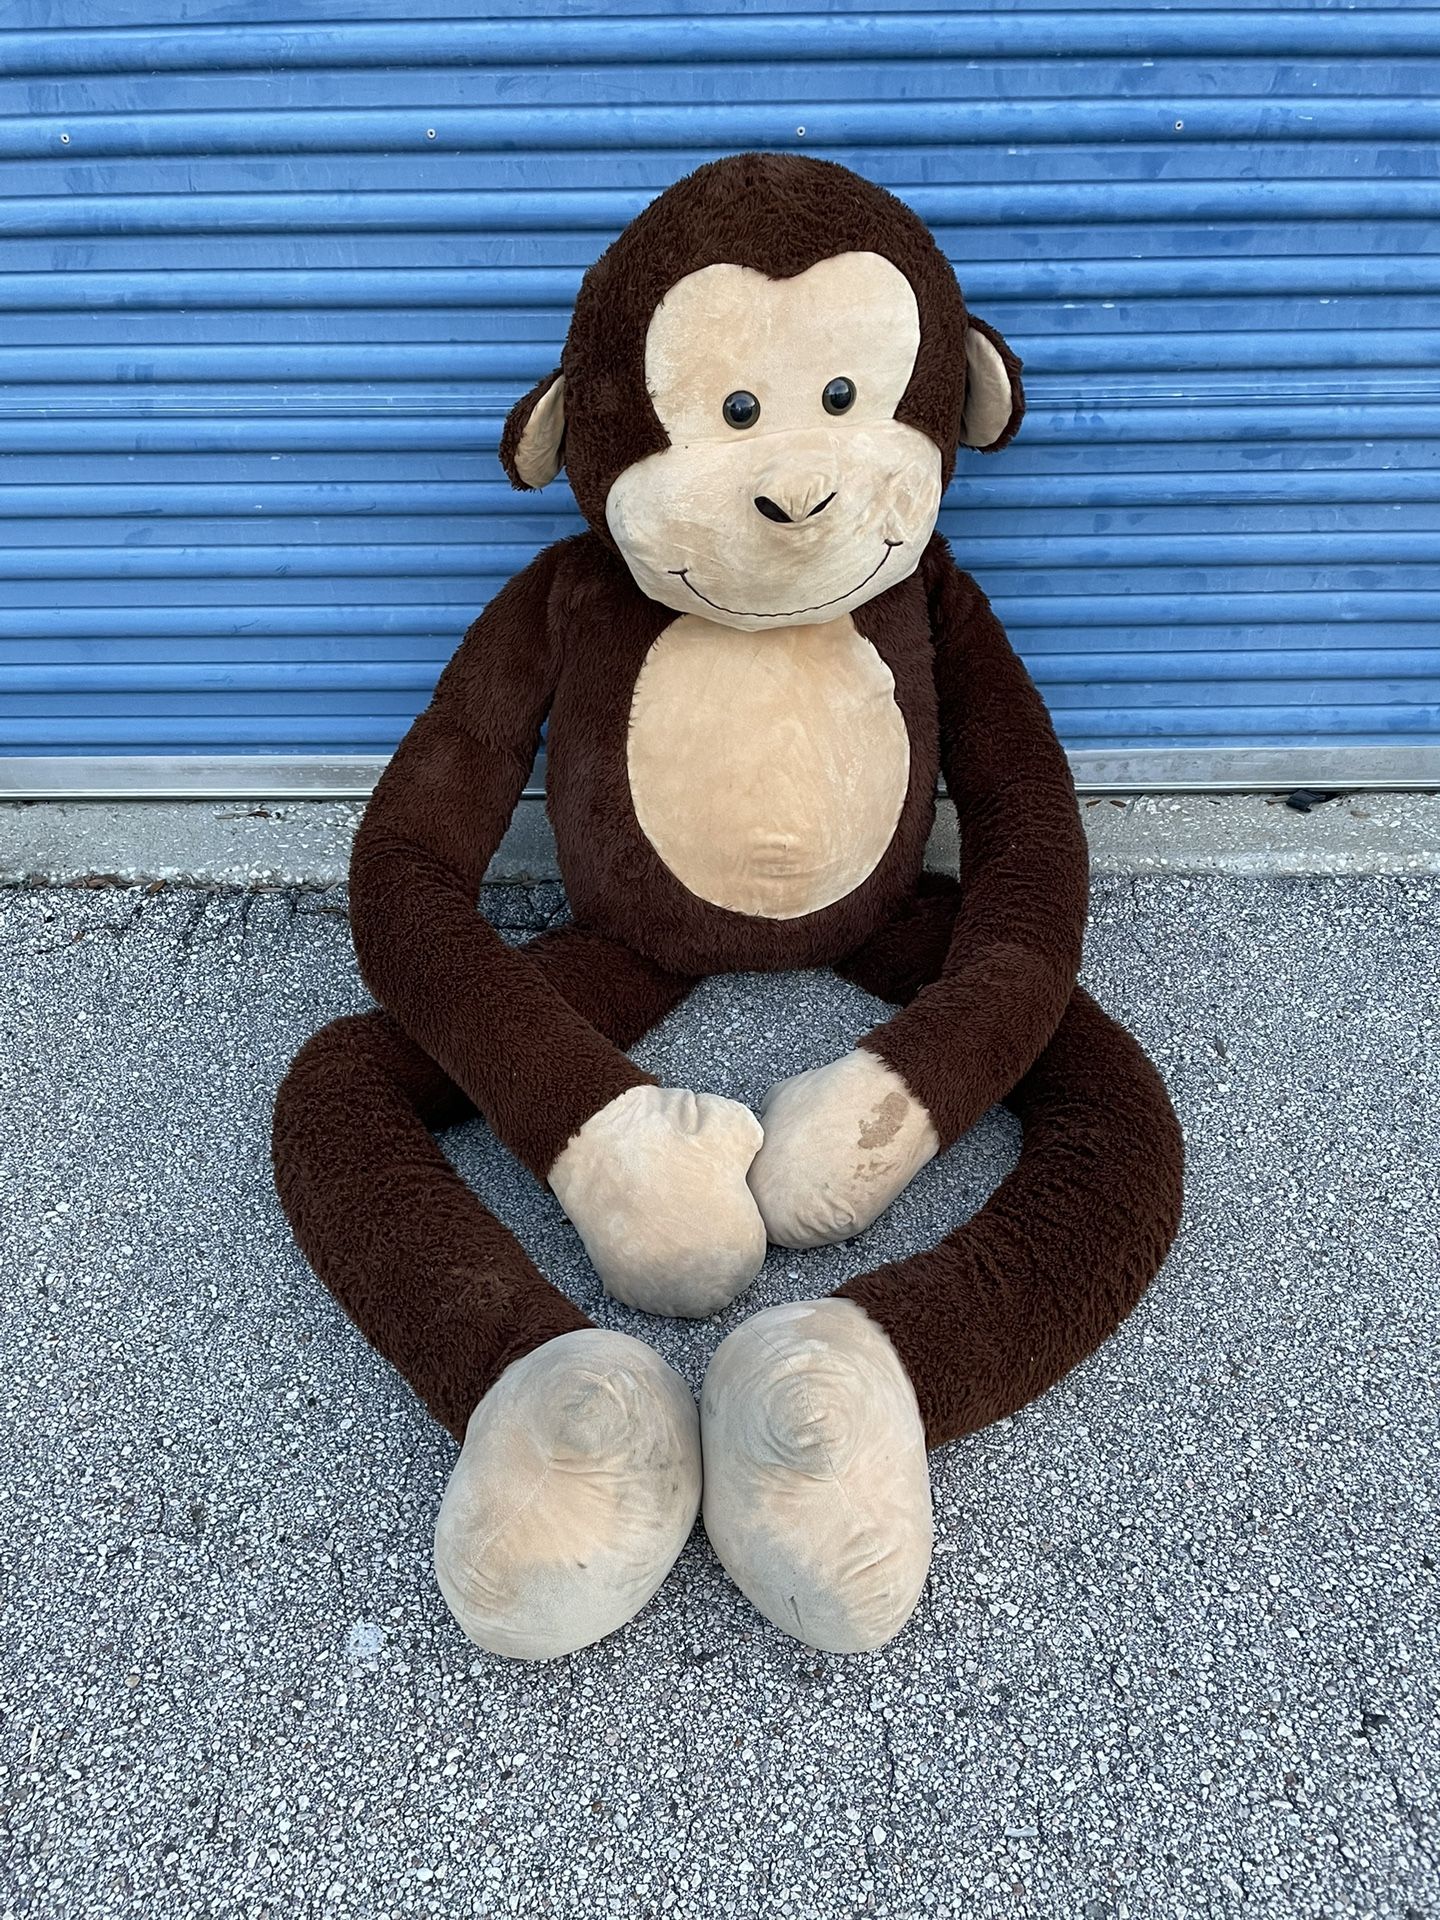 5FT Size Giant Stuffed Soft Plush Monkey Animal Toy - Used 